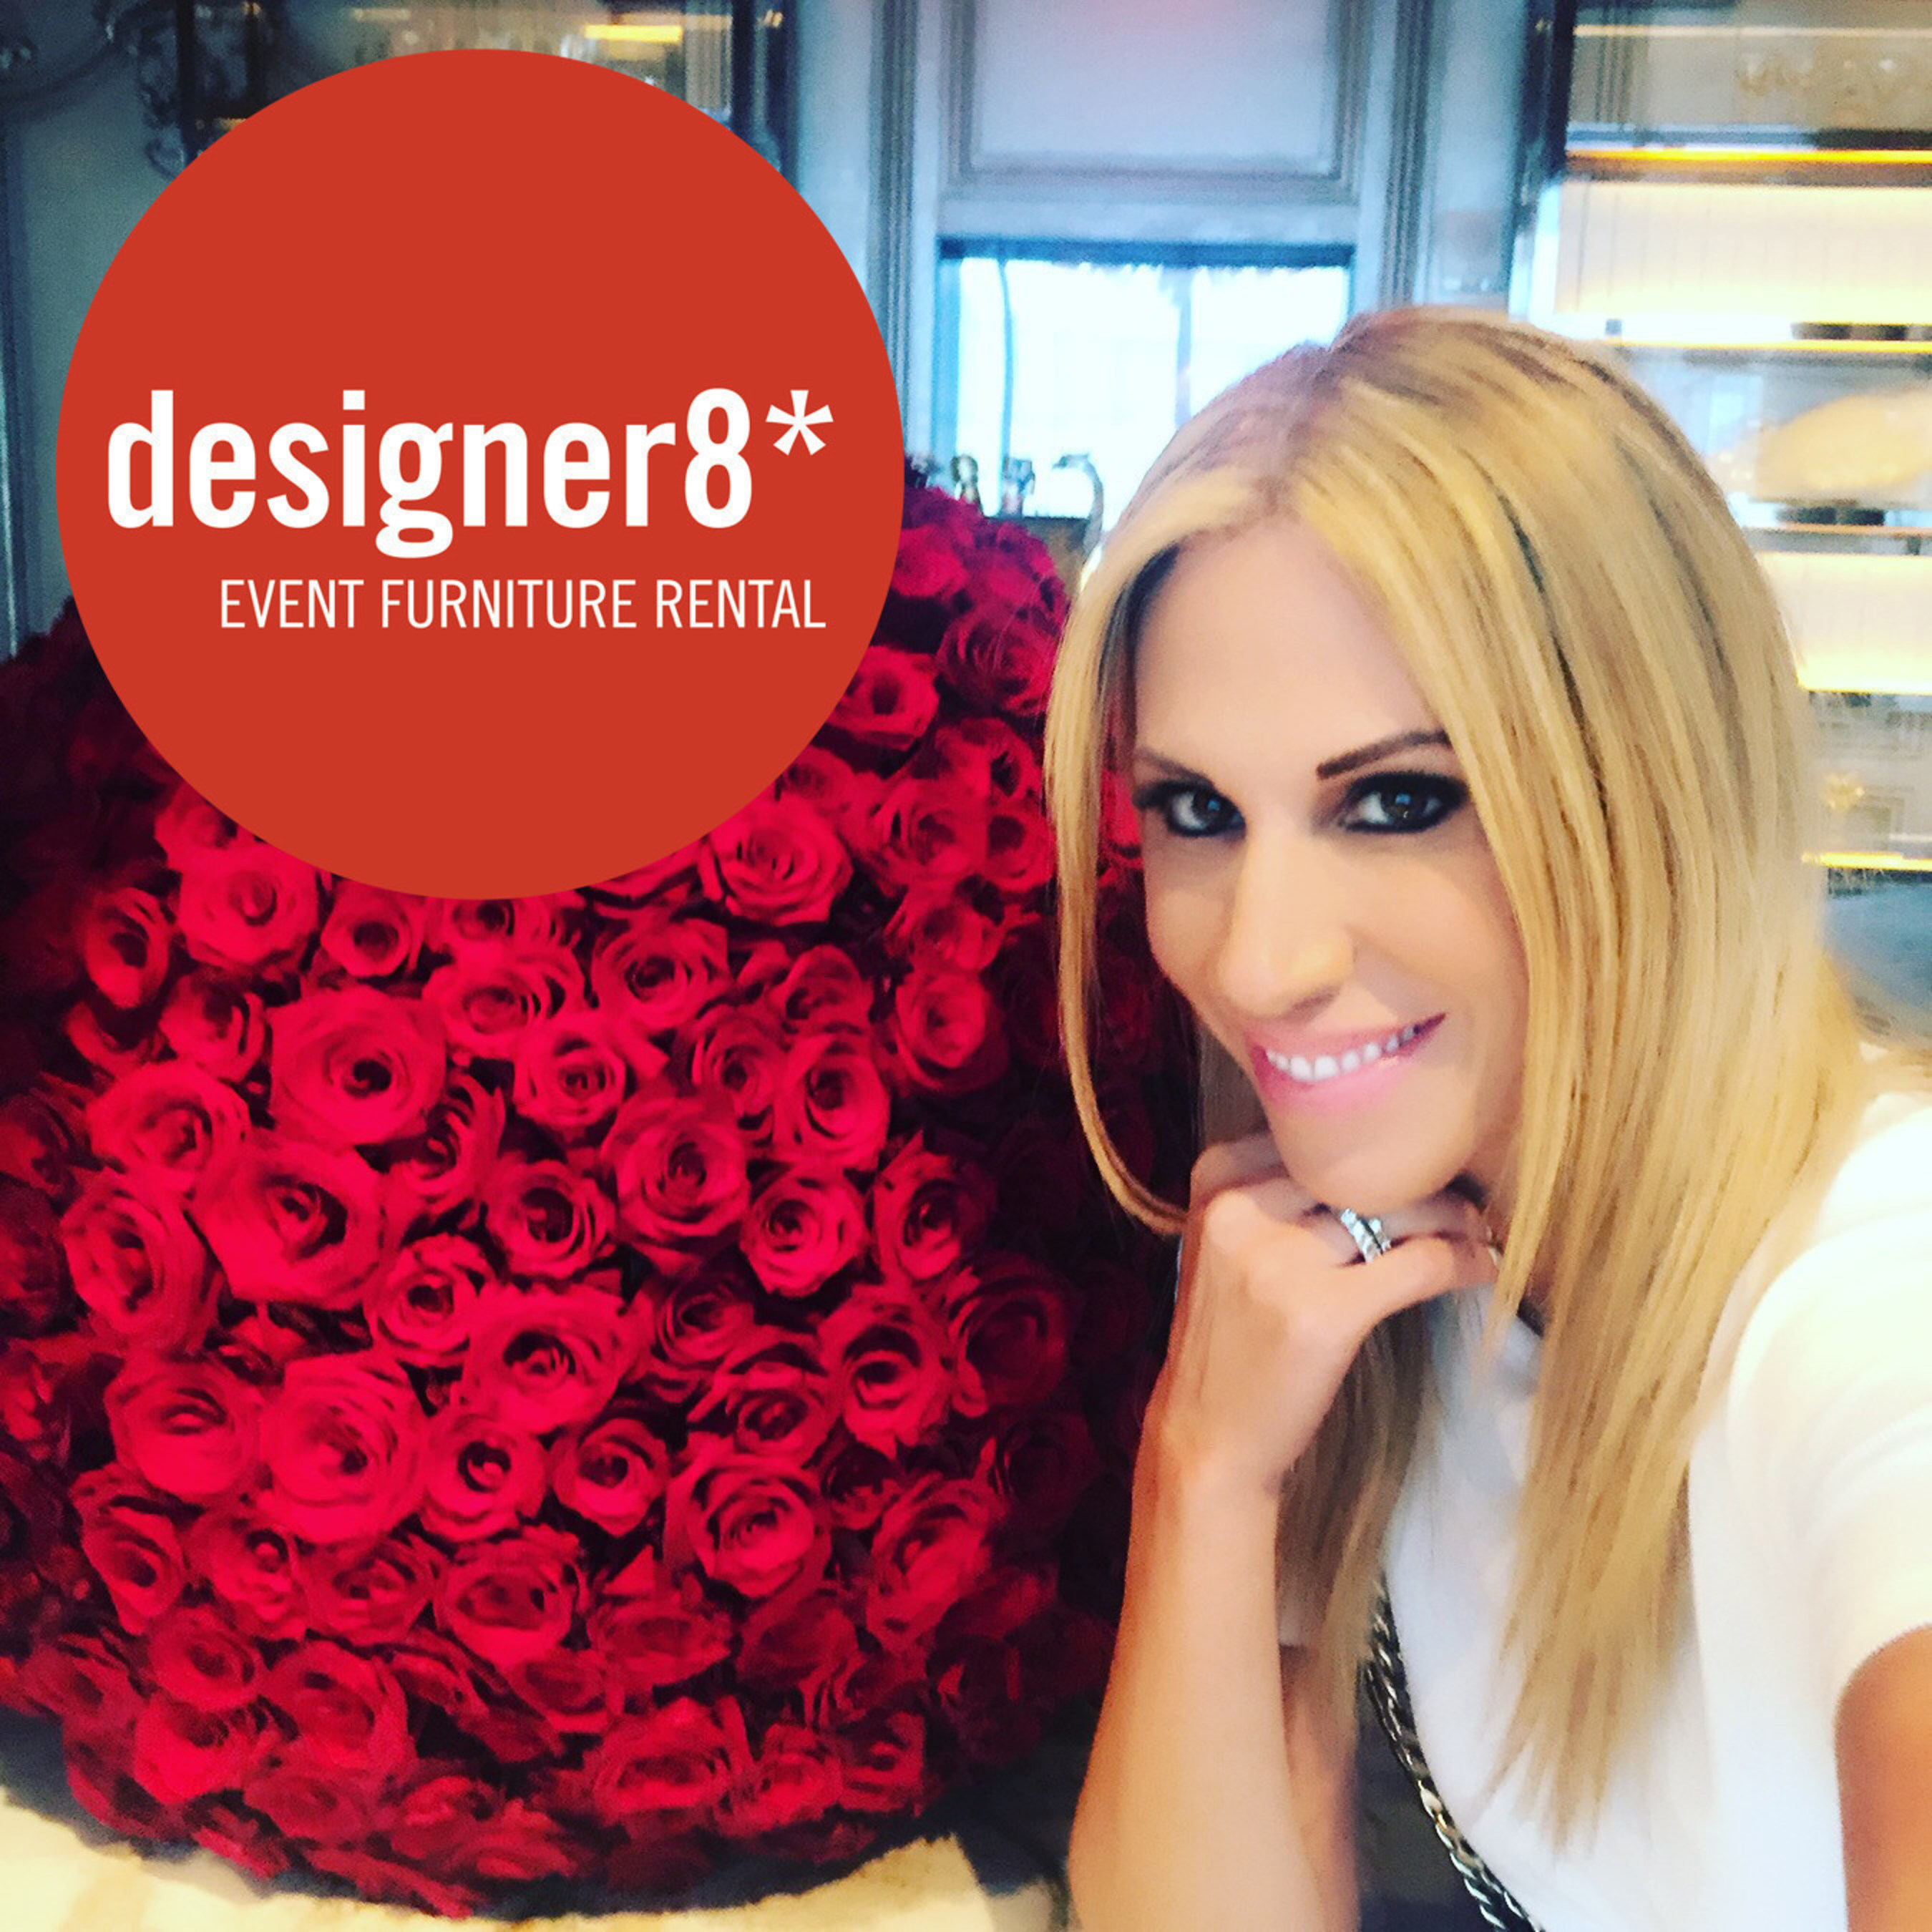 Samantha Sackler, CEO of designer8*